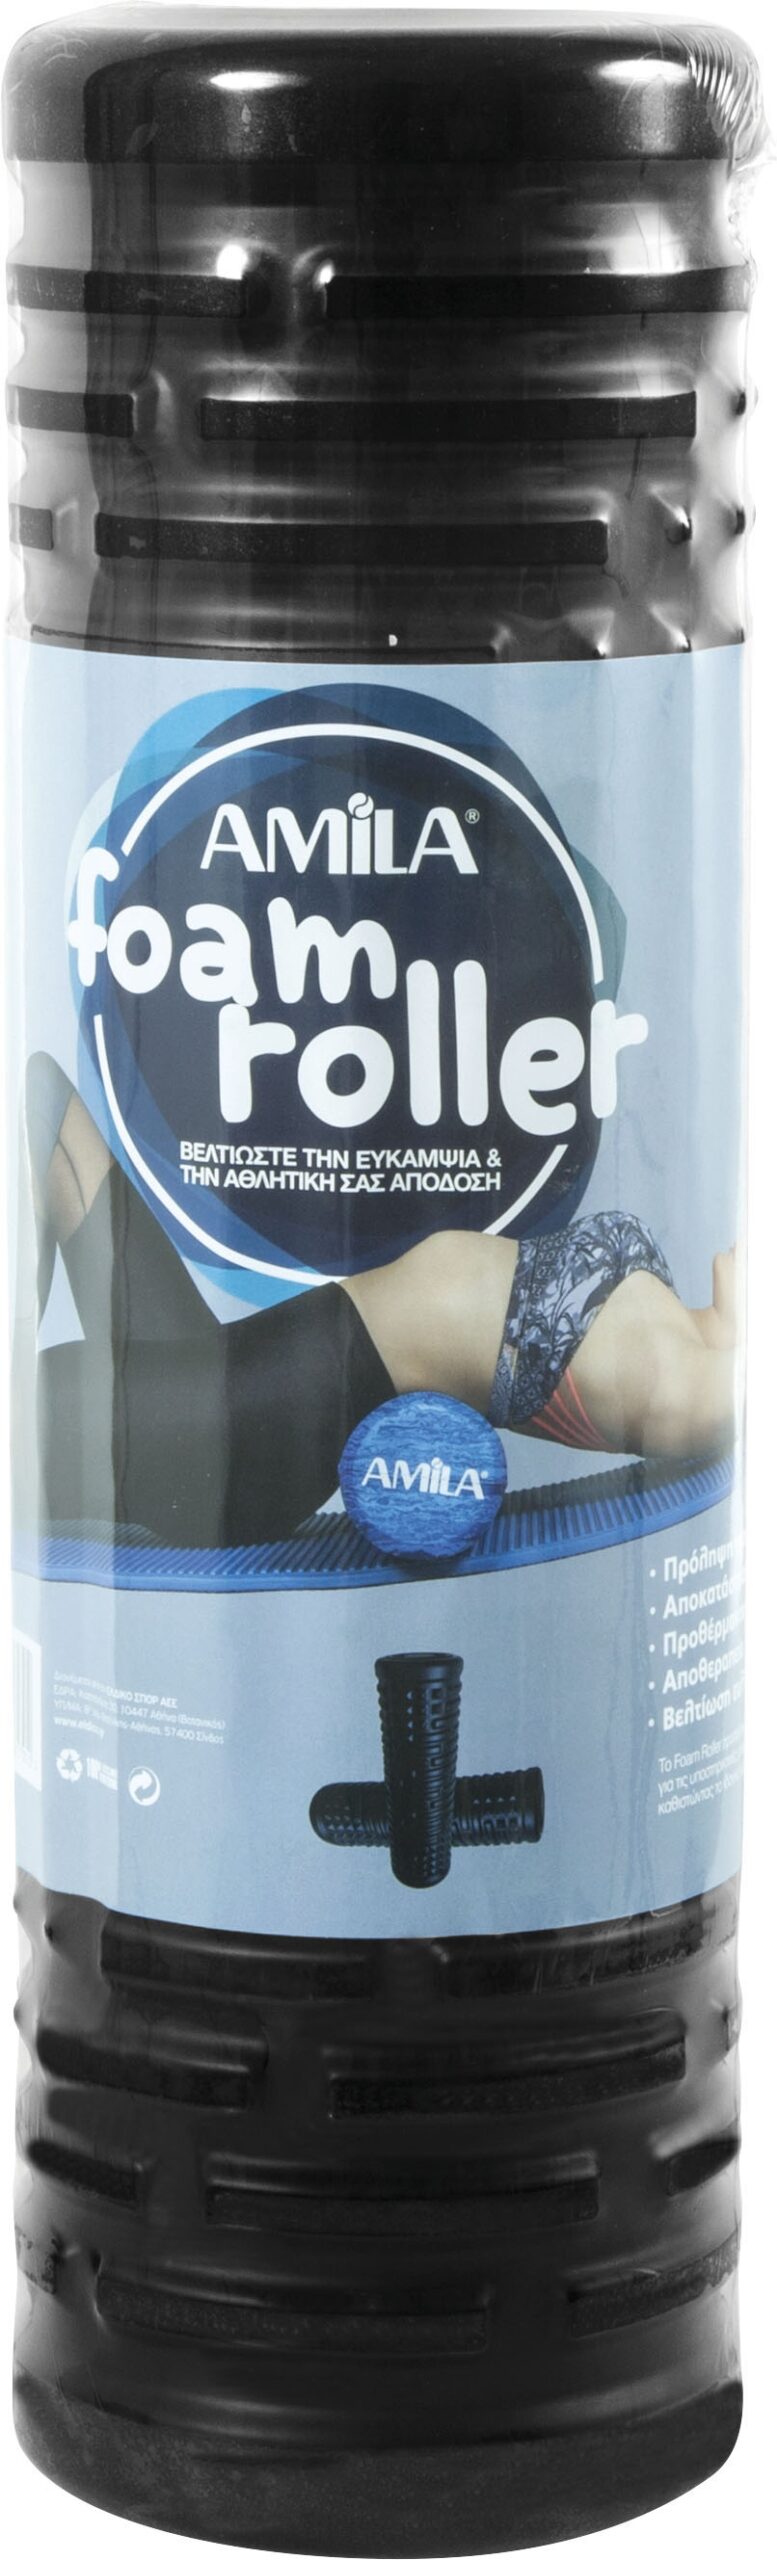 Roller Foam